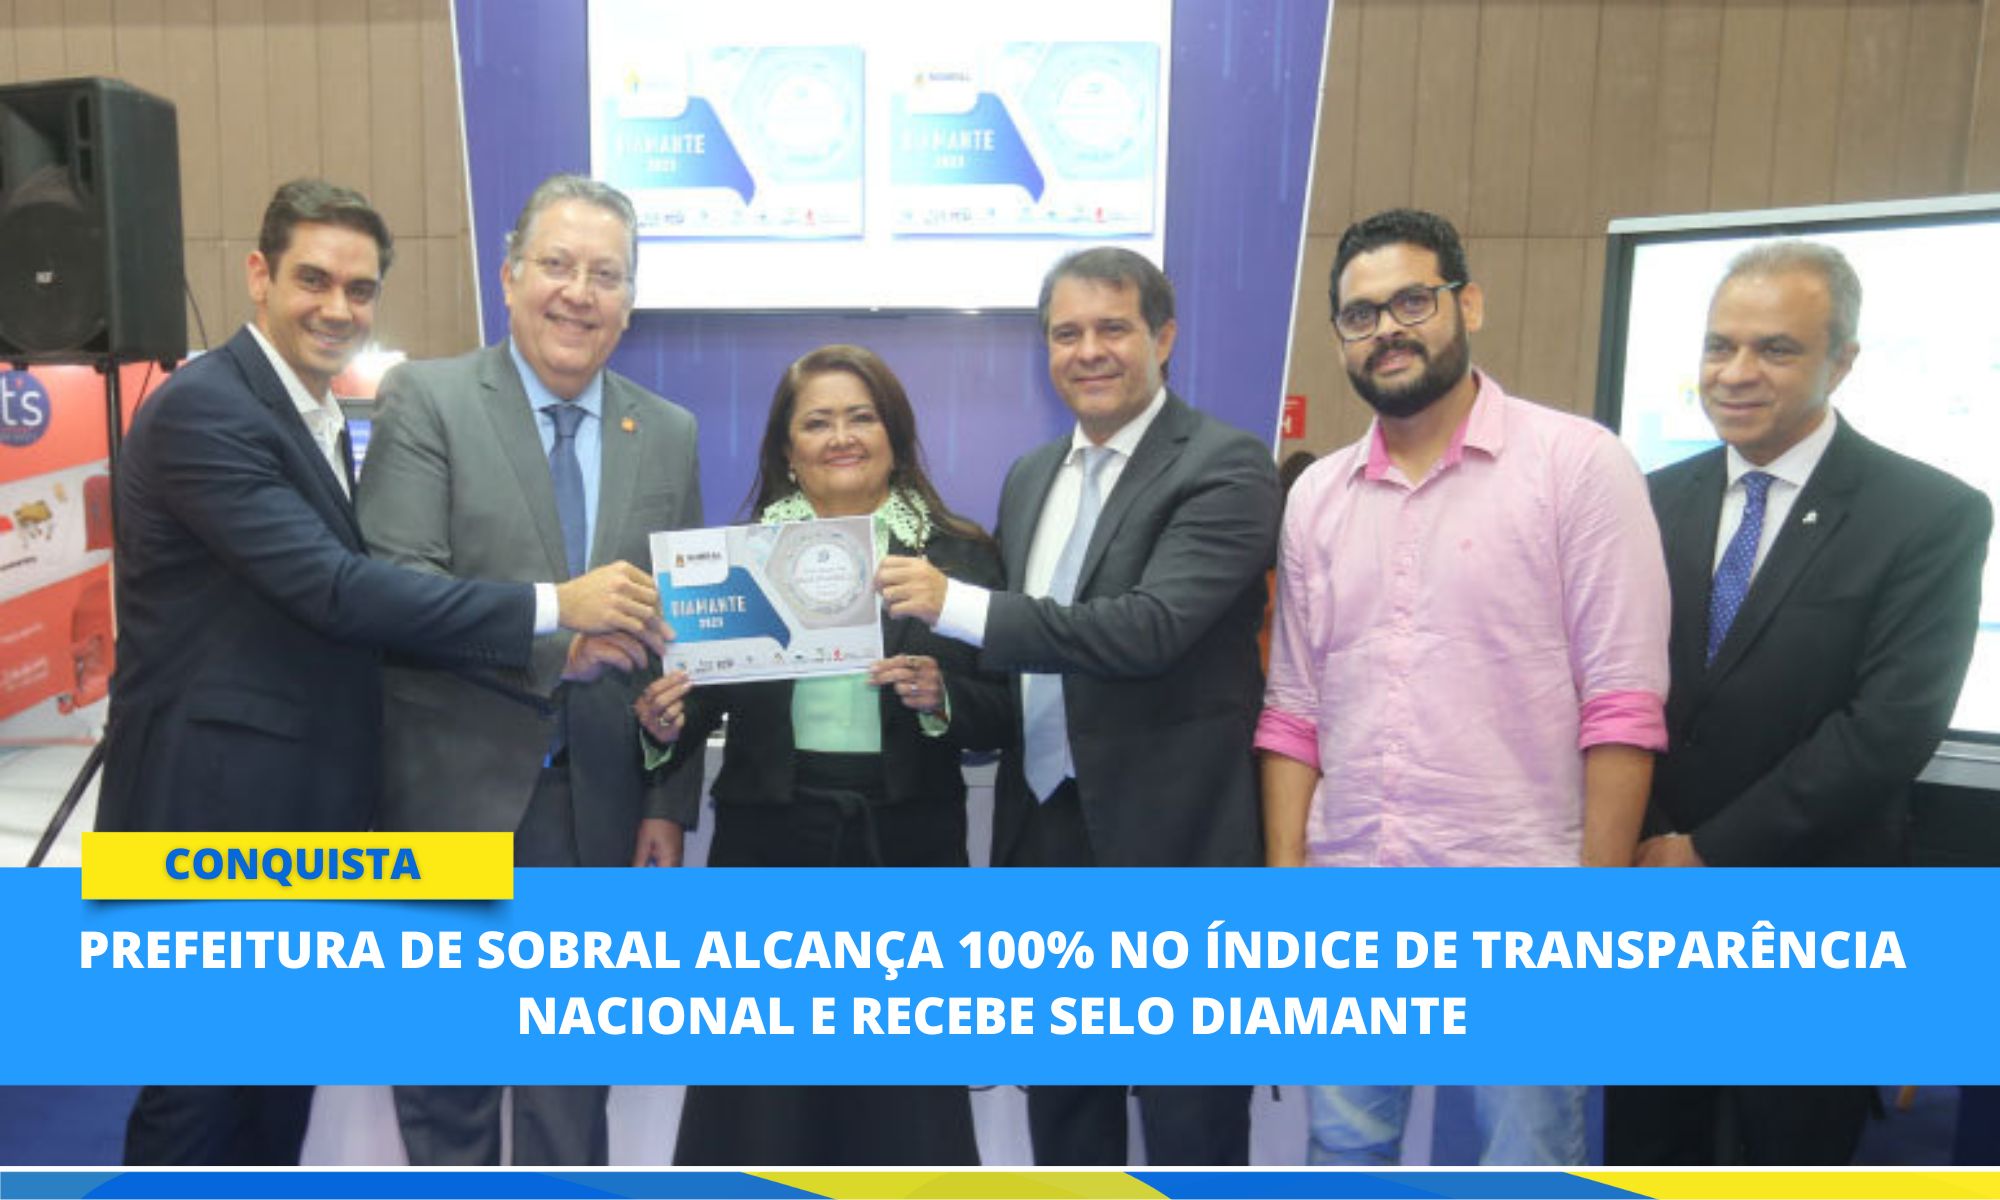  Prefeitura de Sobral alcança 100% no Índice de Transparência Nacional e rece...